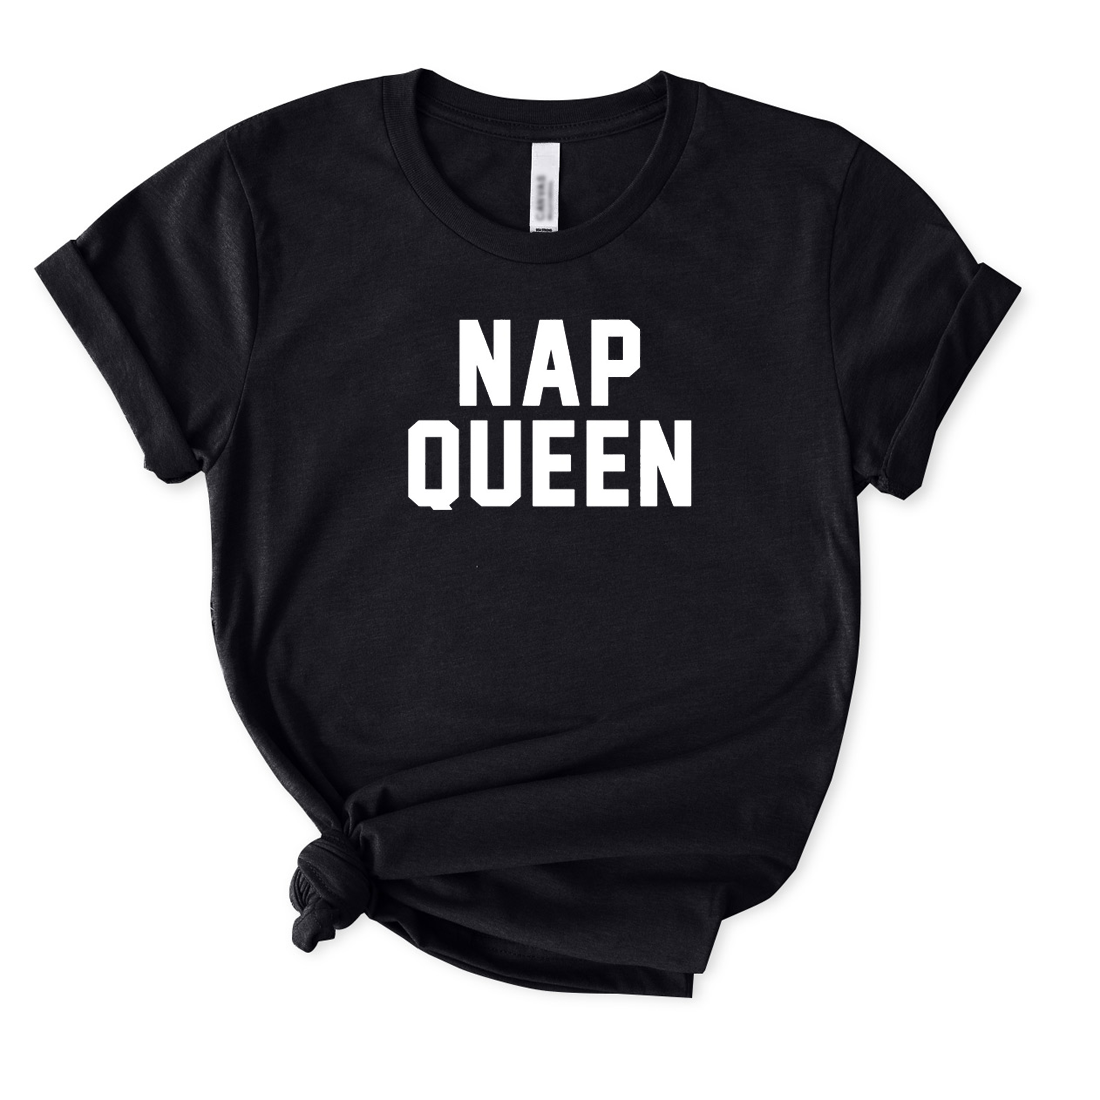 NAP QUEEN T-Shirt for Women